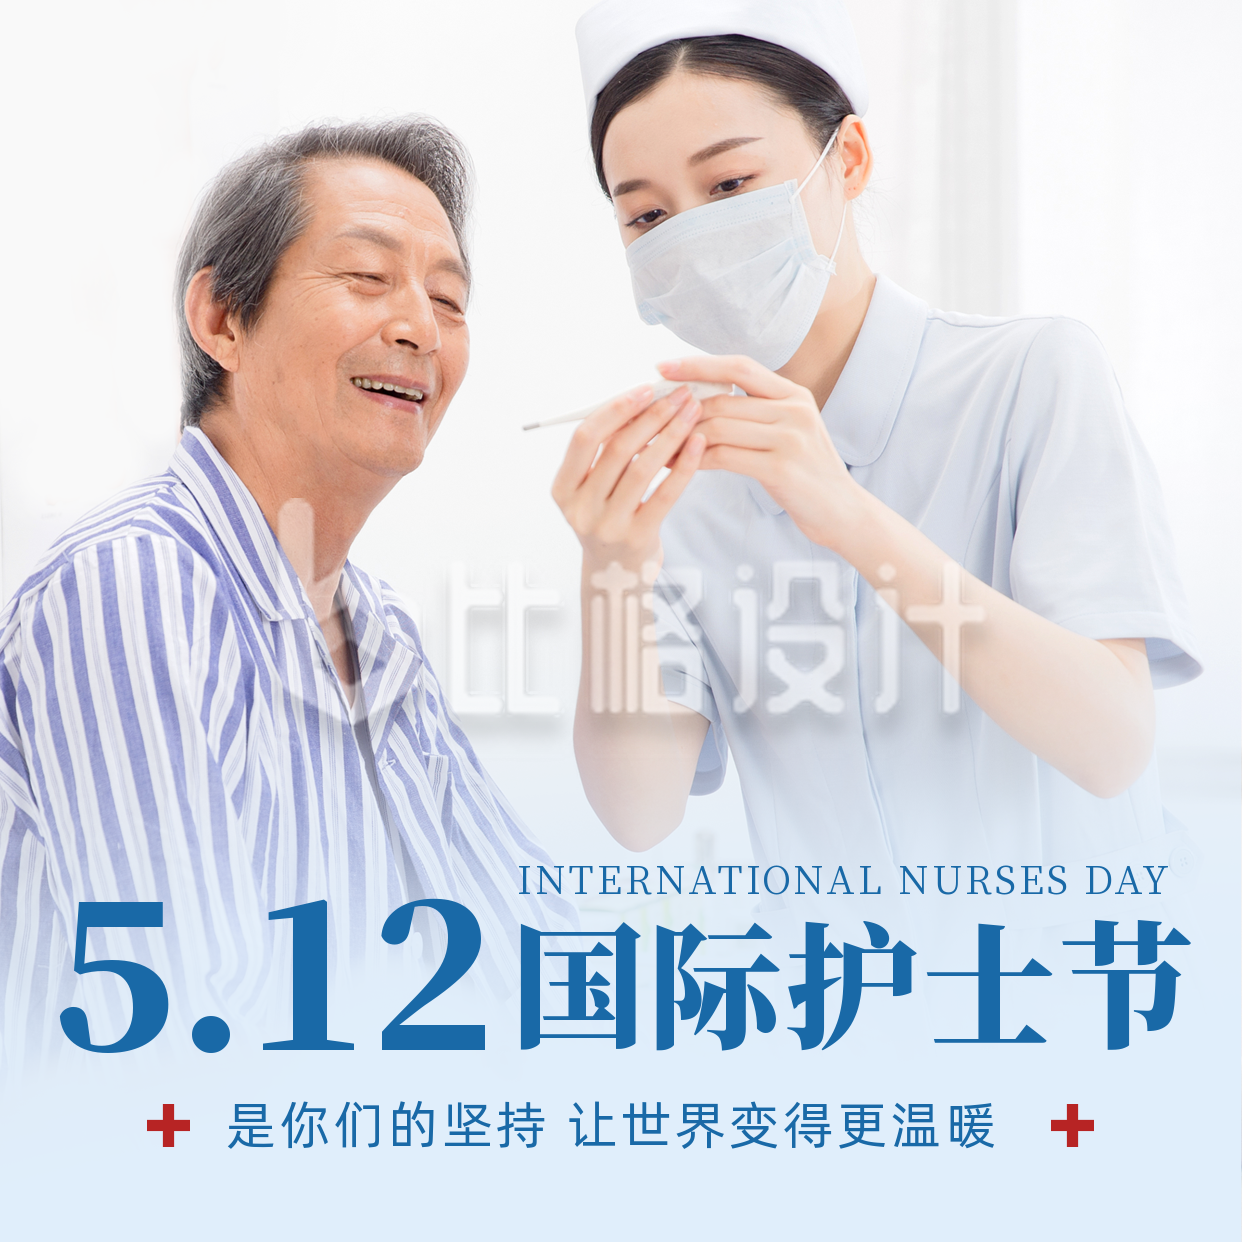 国际护士节实景祝福方形海报